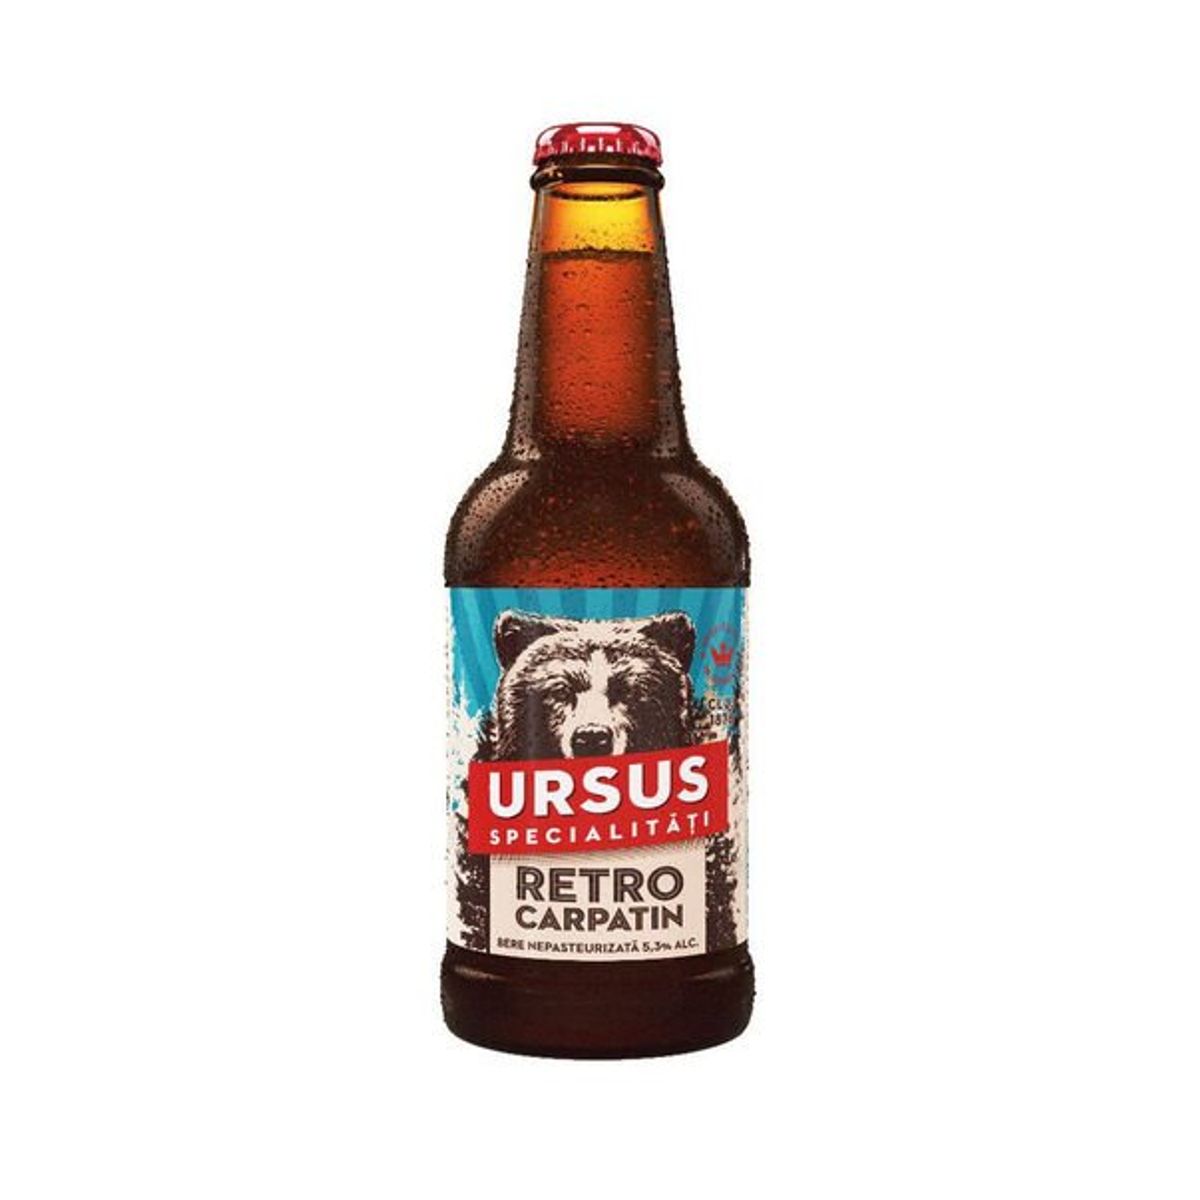 Ursus Retro Carpatin